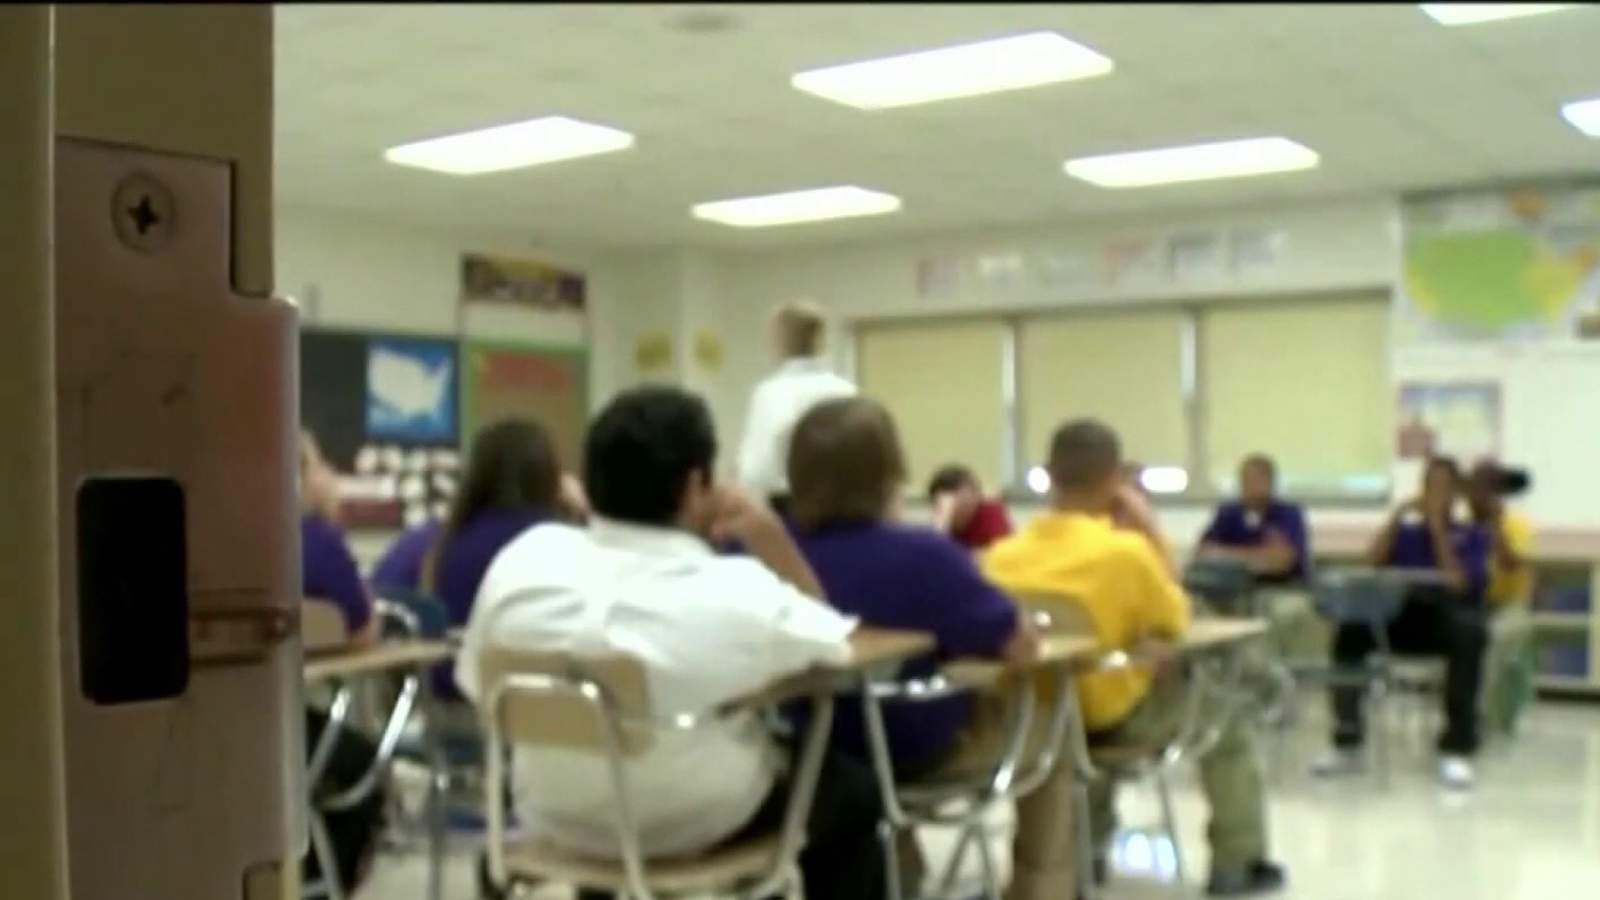 Judge slated to rule on Florida teachers union lawsuit next week